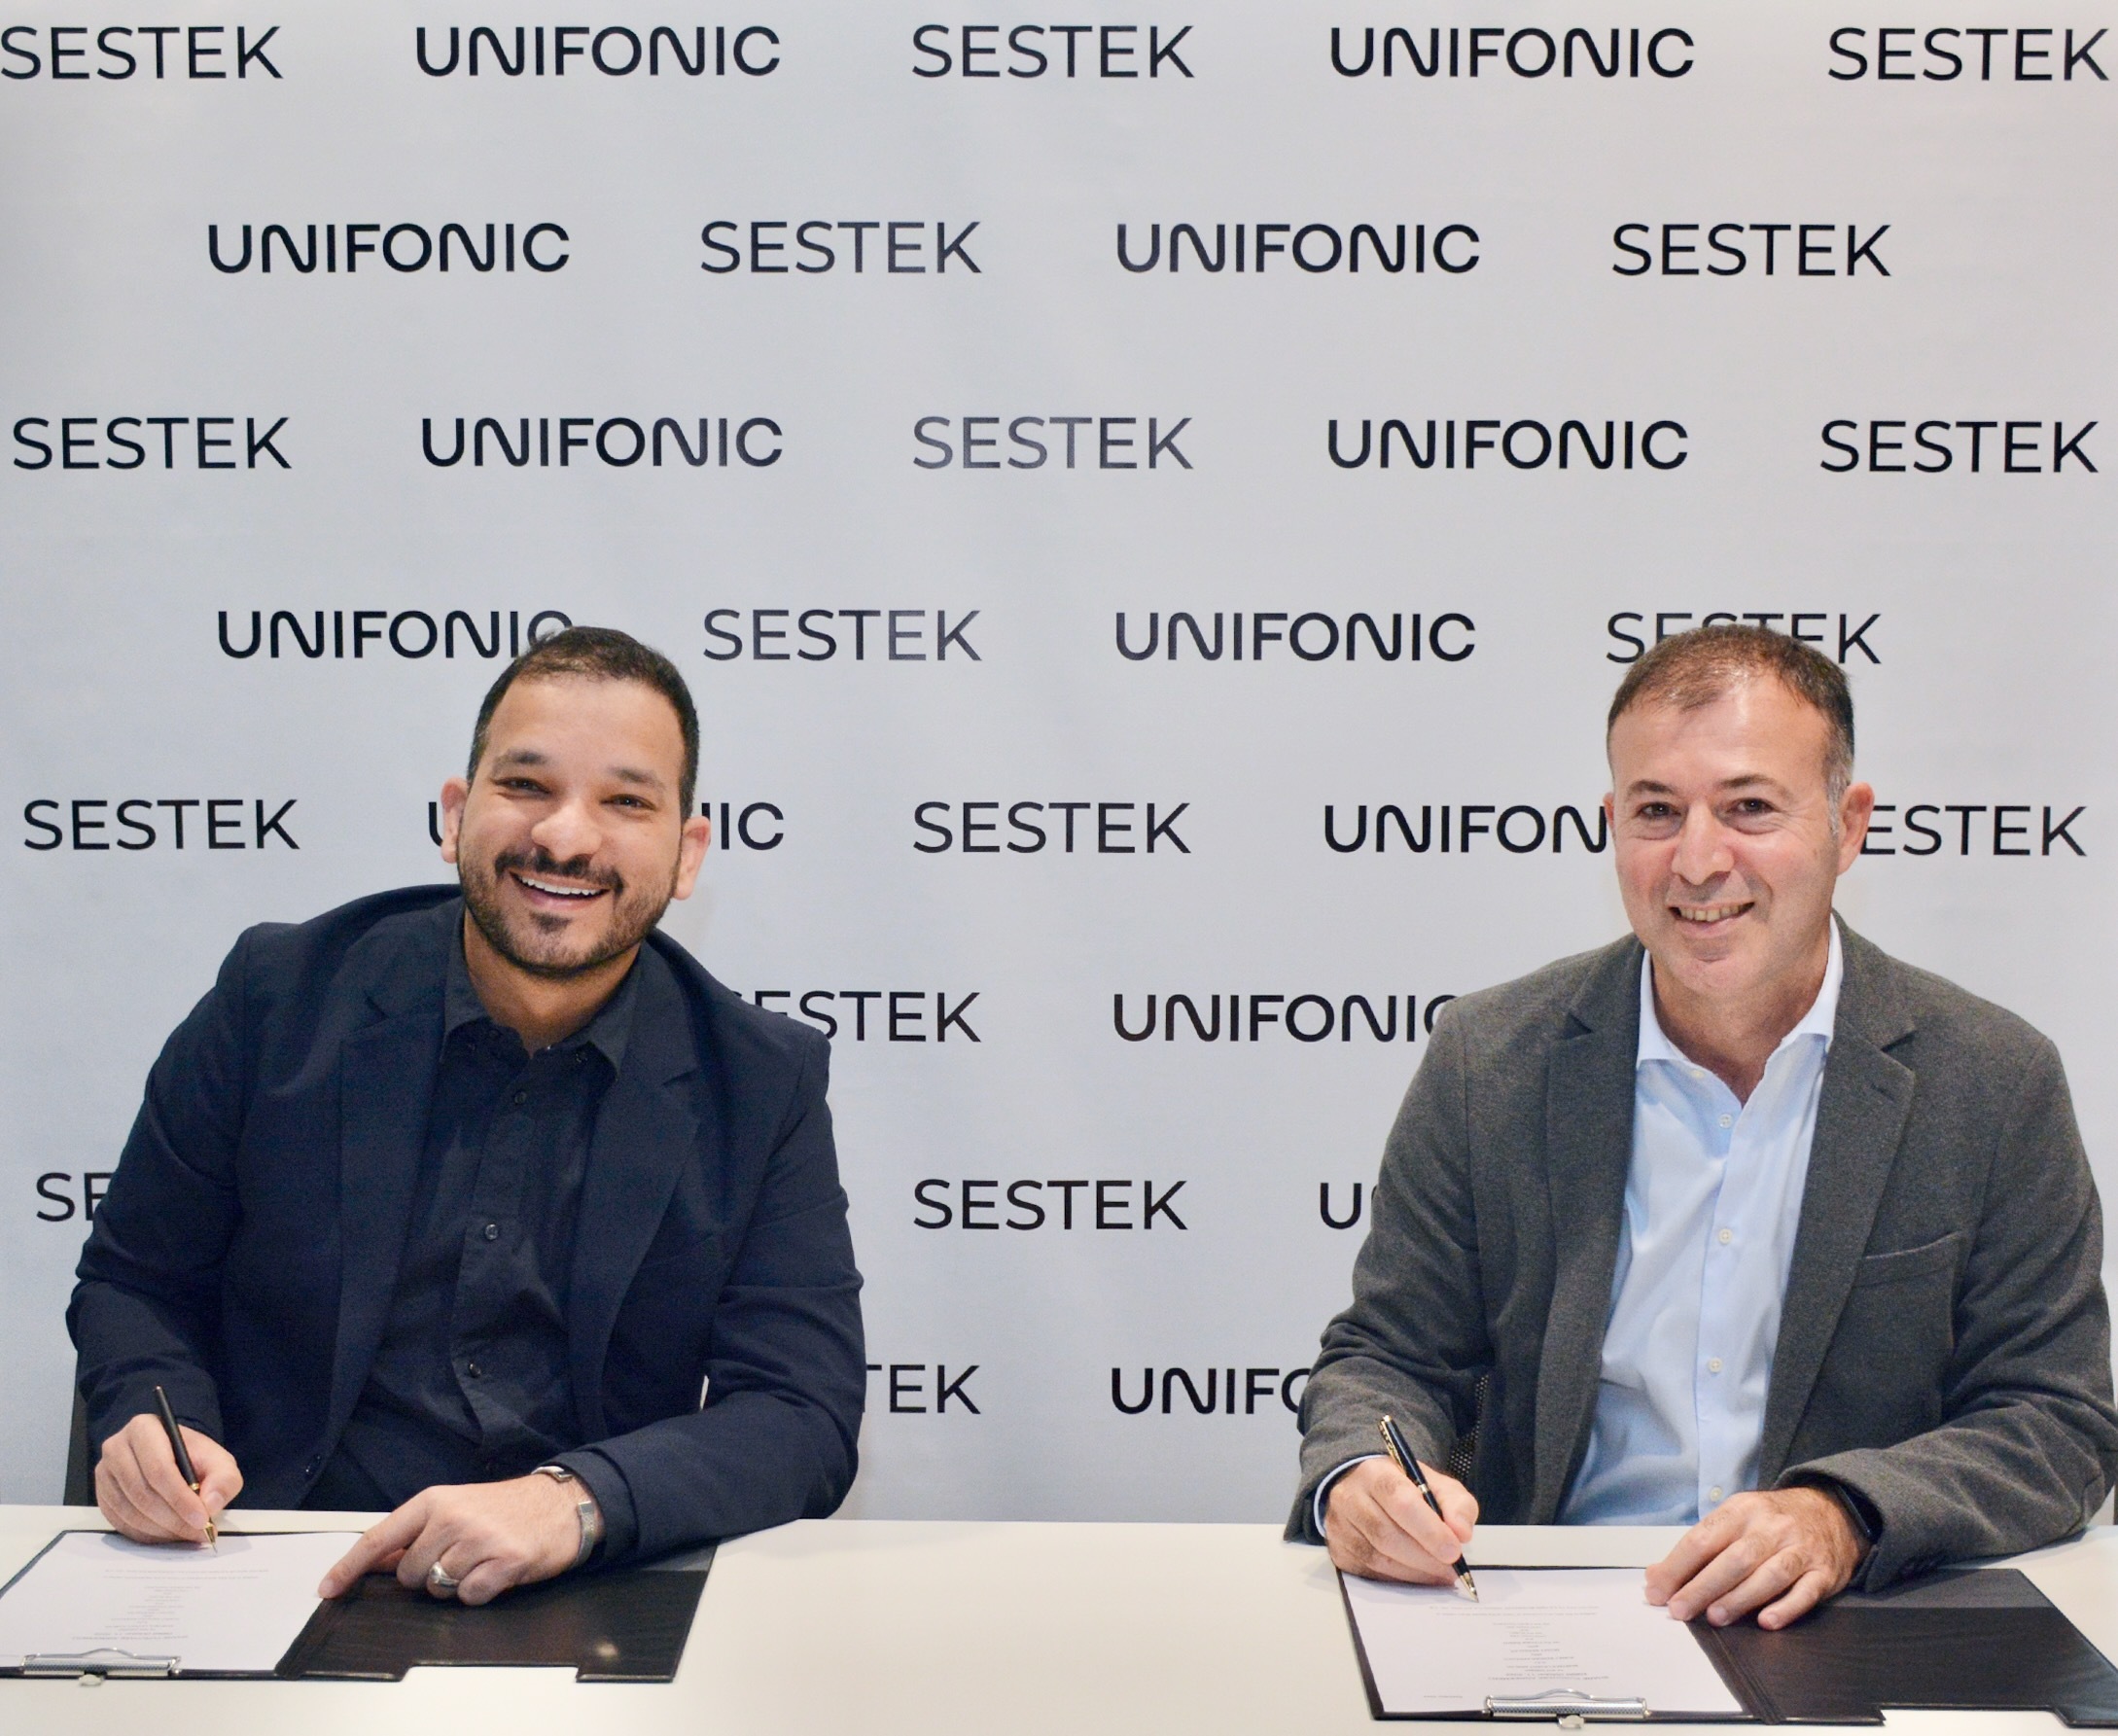 Unifonic announces acquisition of Sestek